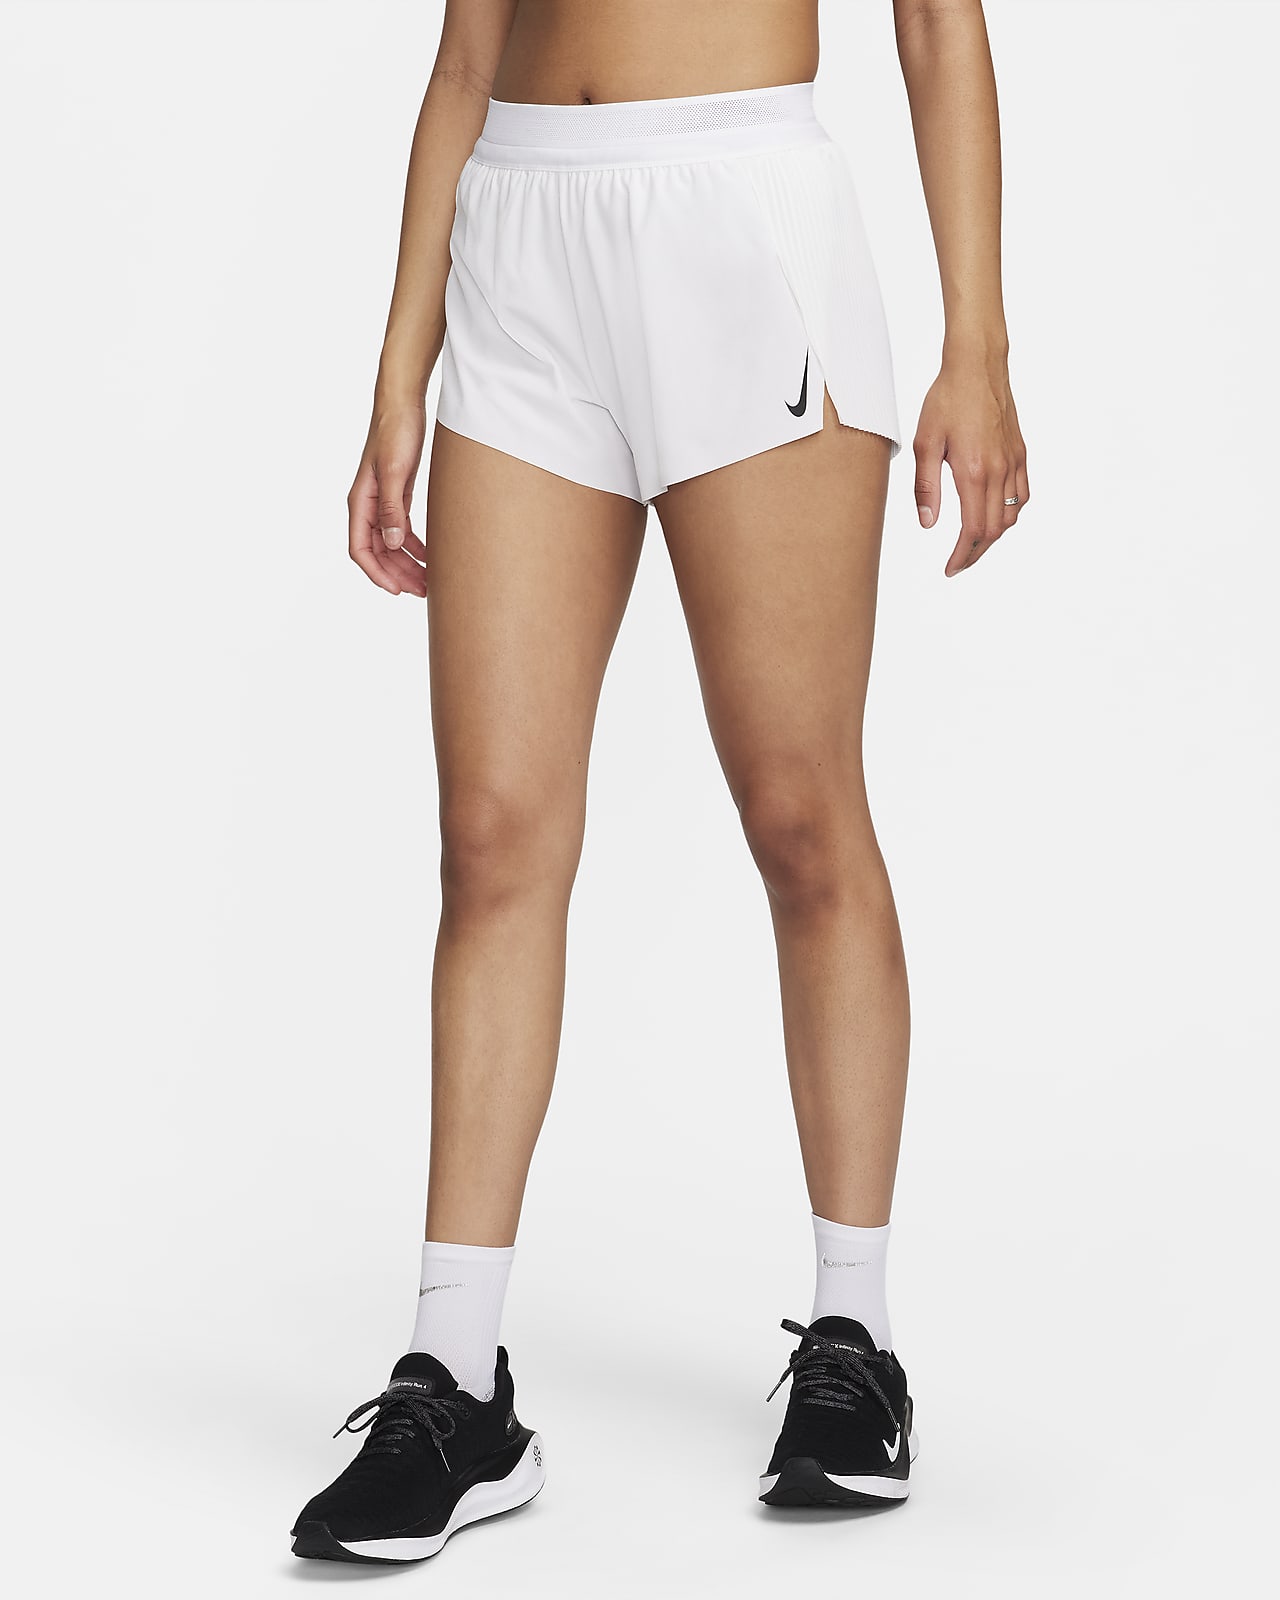 Short de running taille mi-haute avec sous-short intégré Dri-FIT ADV Nike AeroSwift 8 cm pour femme